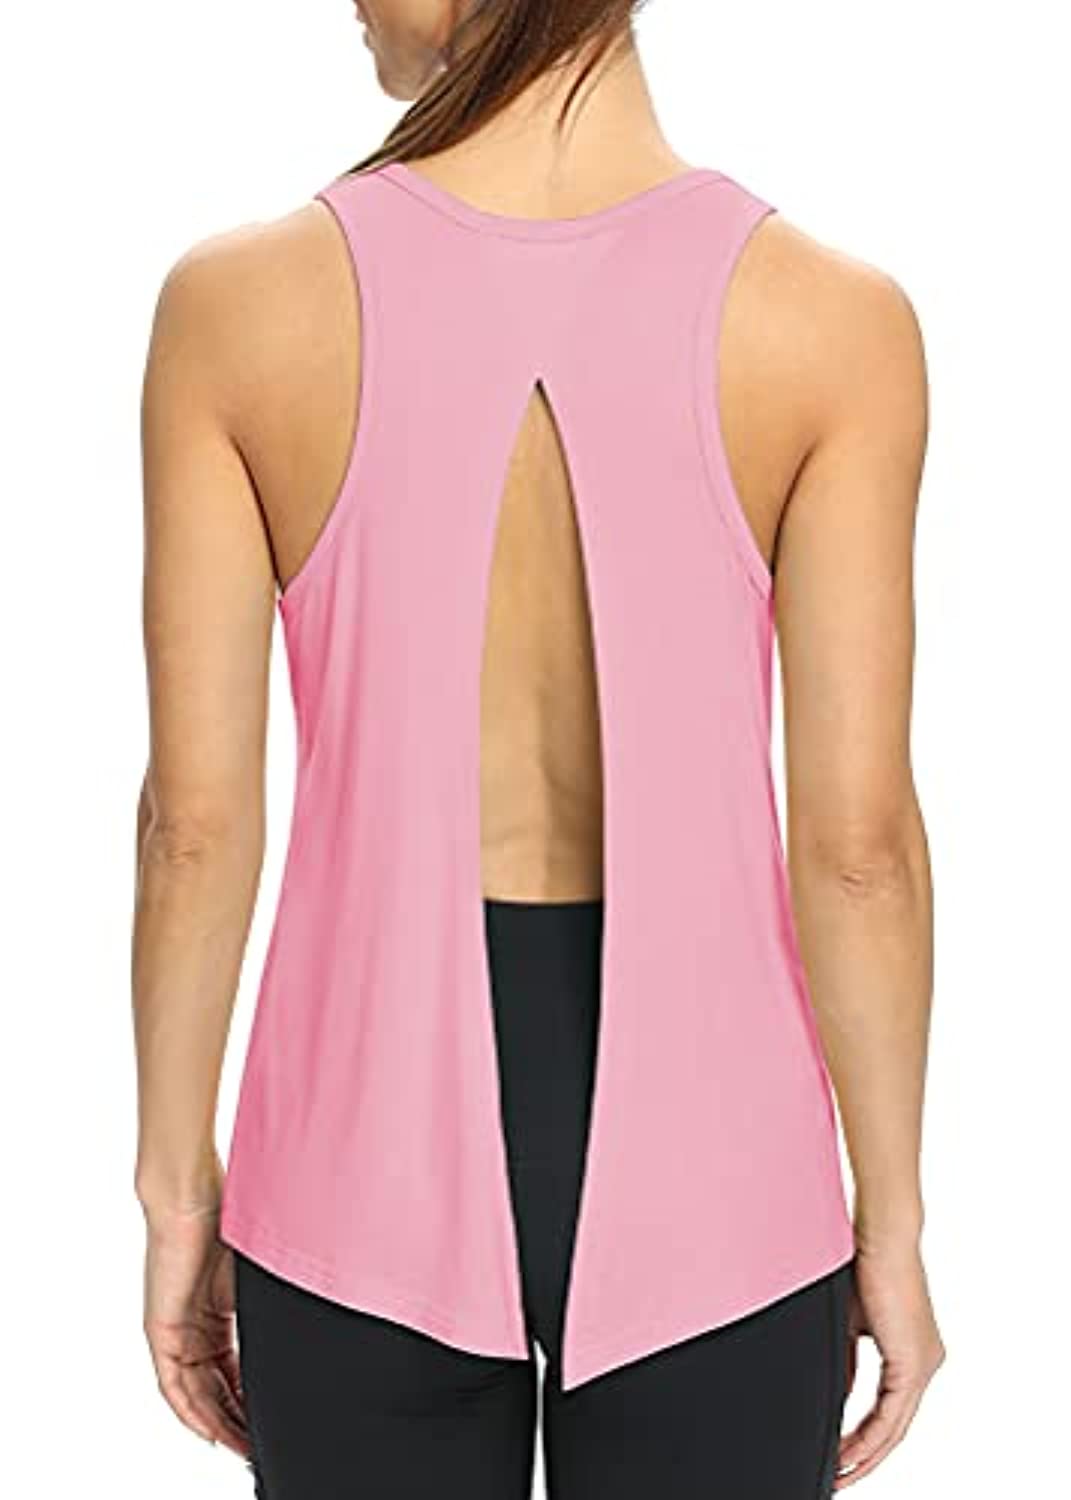 Mippo - Ropa de entrenamiento para mujer, linda corbata de yoga, tops,  camisas musculares con espalda cruzada sin mangas